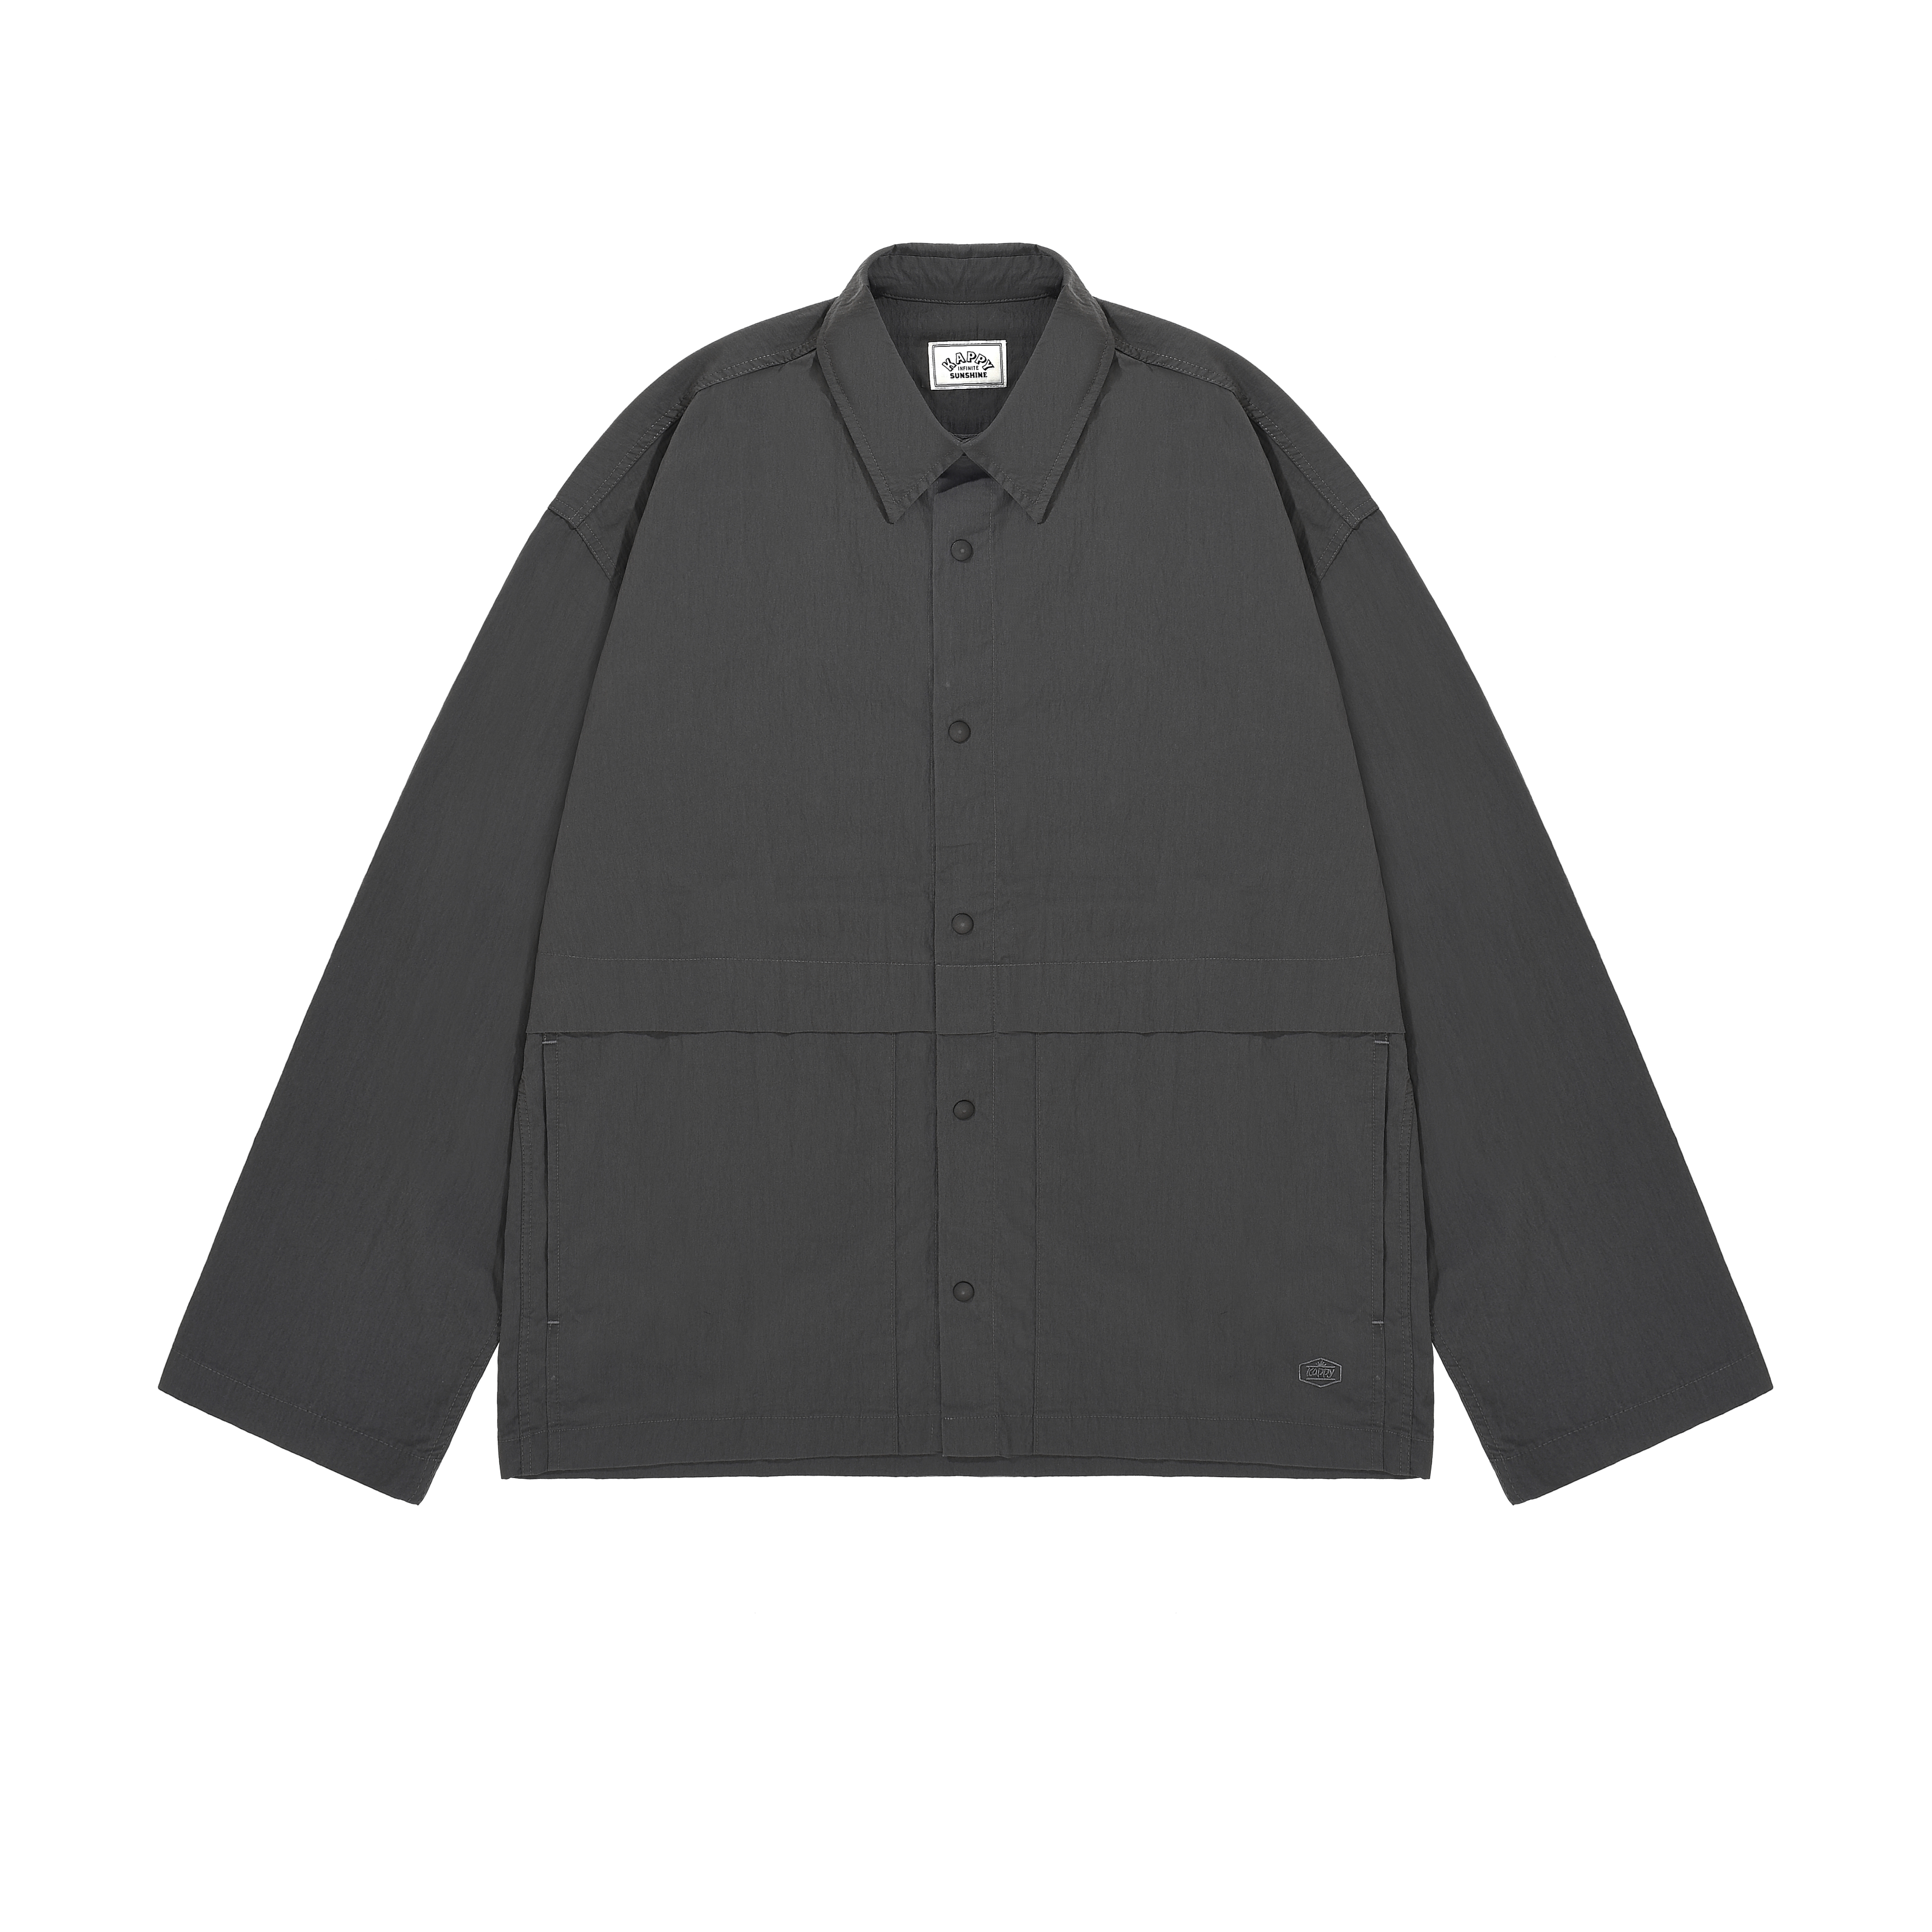 Snap shirt jacket charcoal